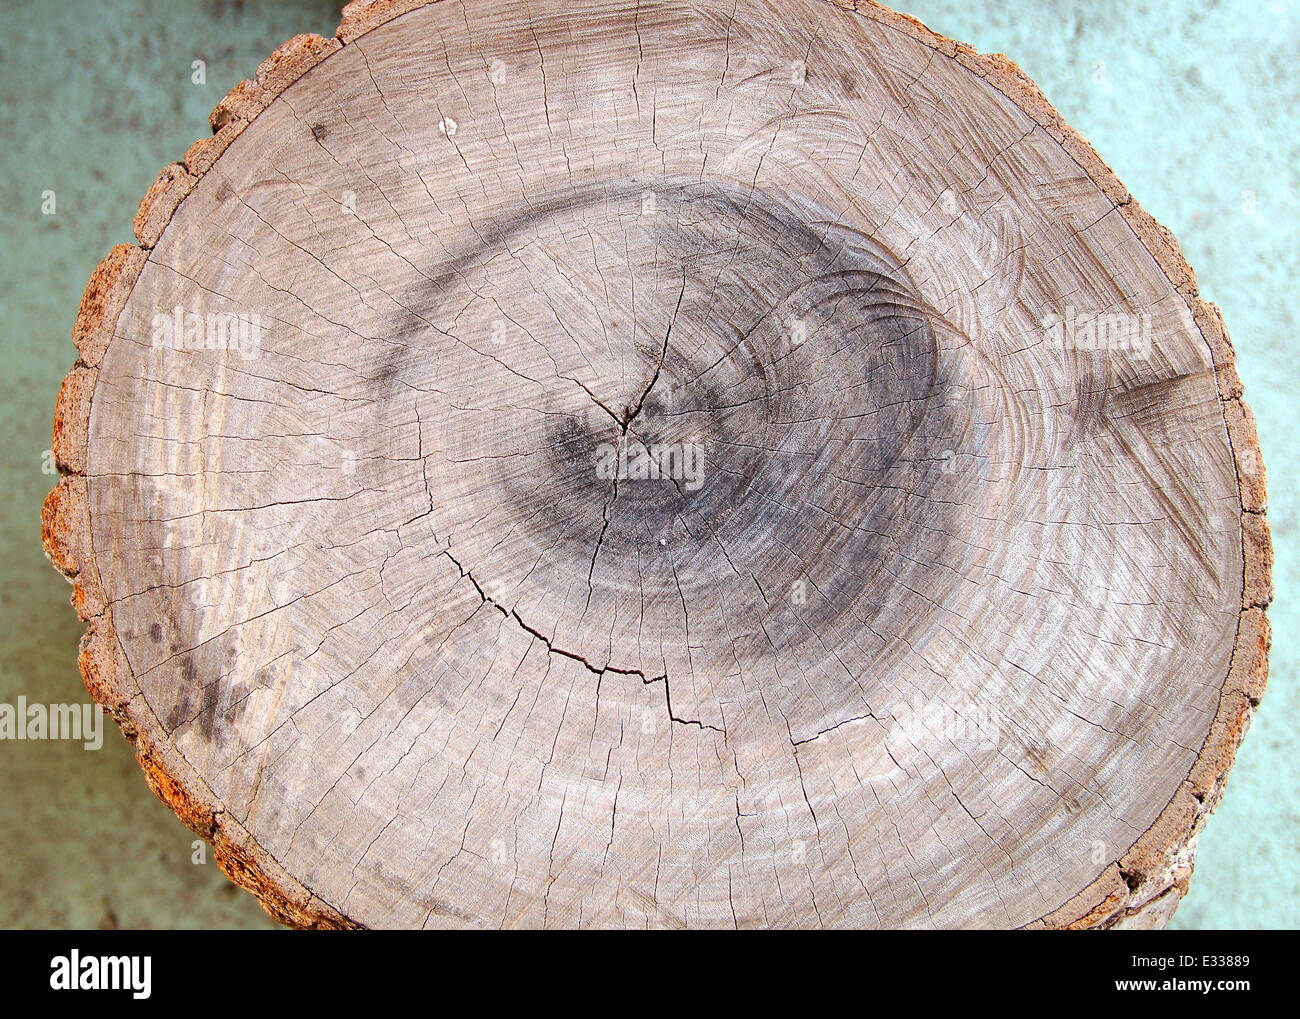 Les anneaux de croissance des arbres pour compter l'âge d'un arbre Banque D'Images